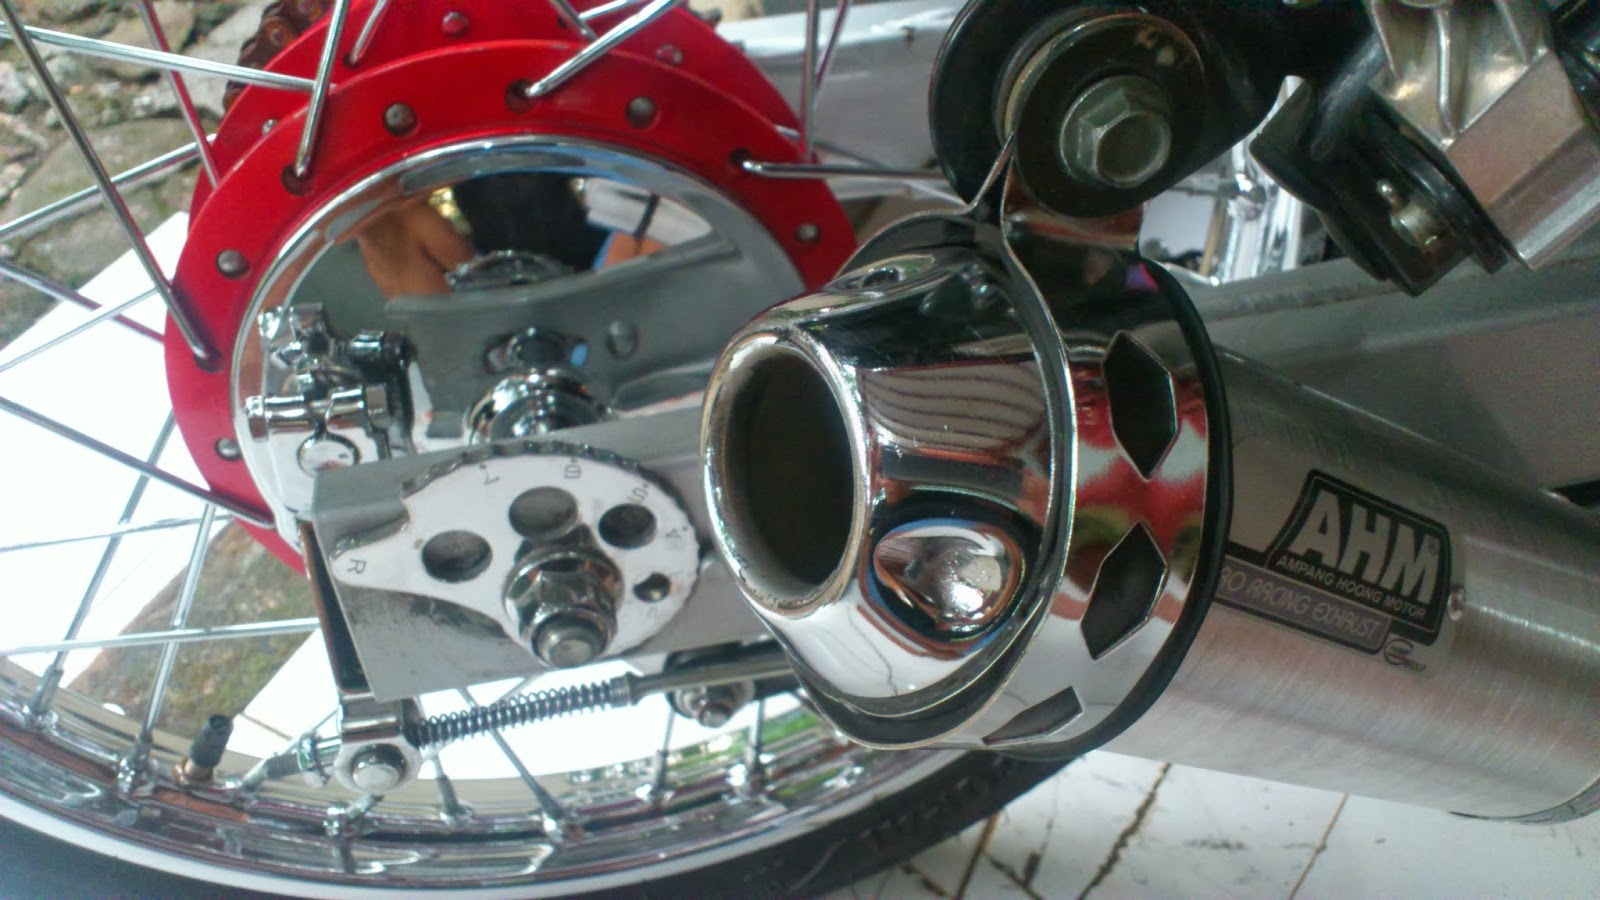 Dunia Motor Koleksi Modifikasi New Vixion 2013 Jari Jari Terbaru